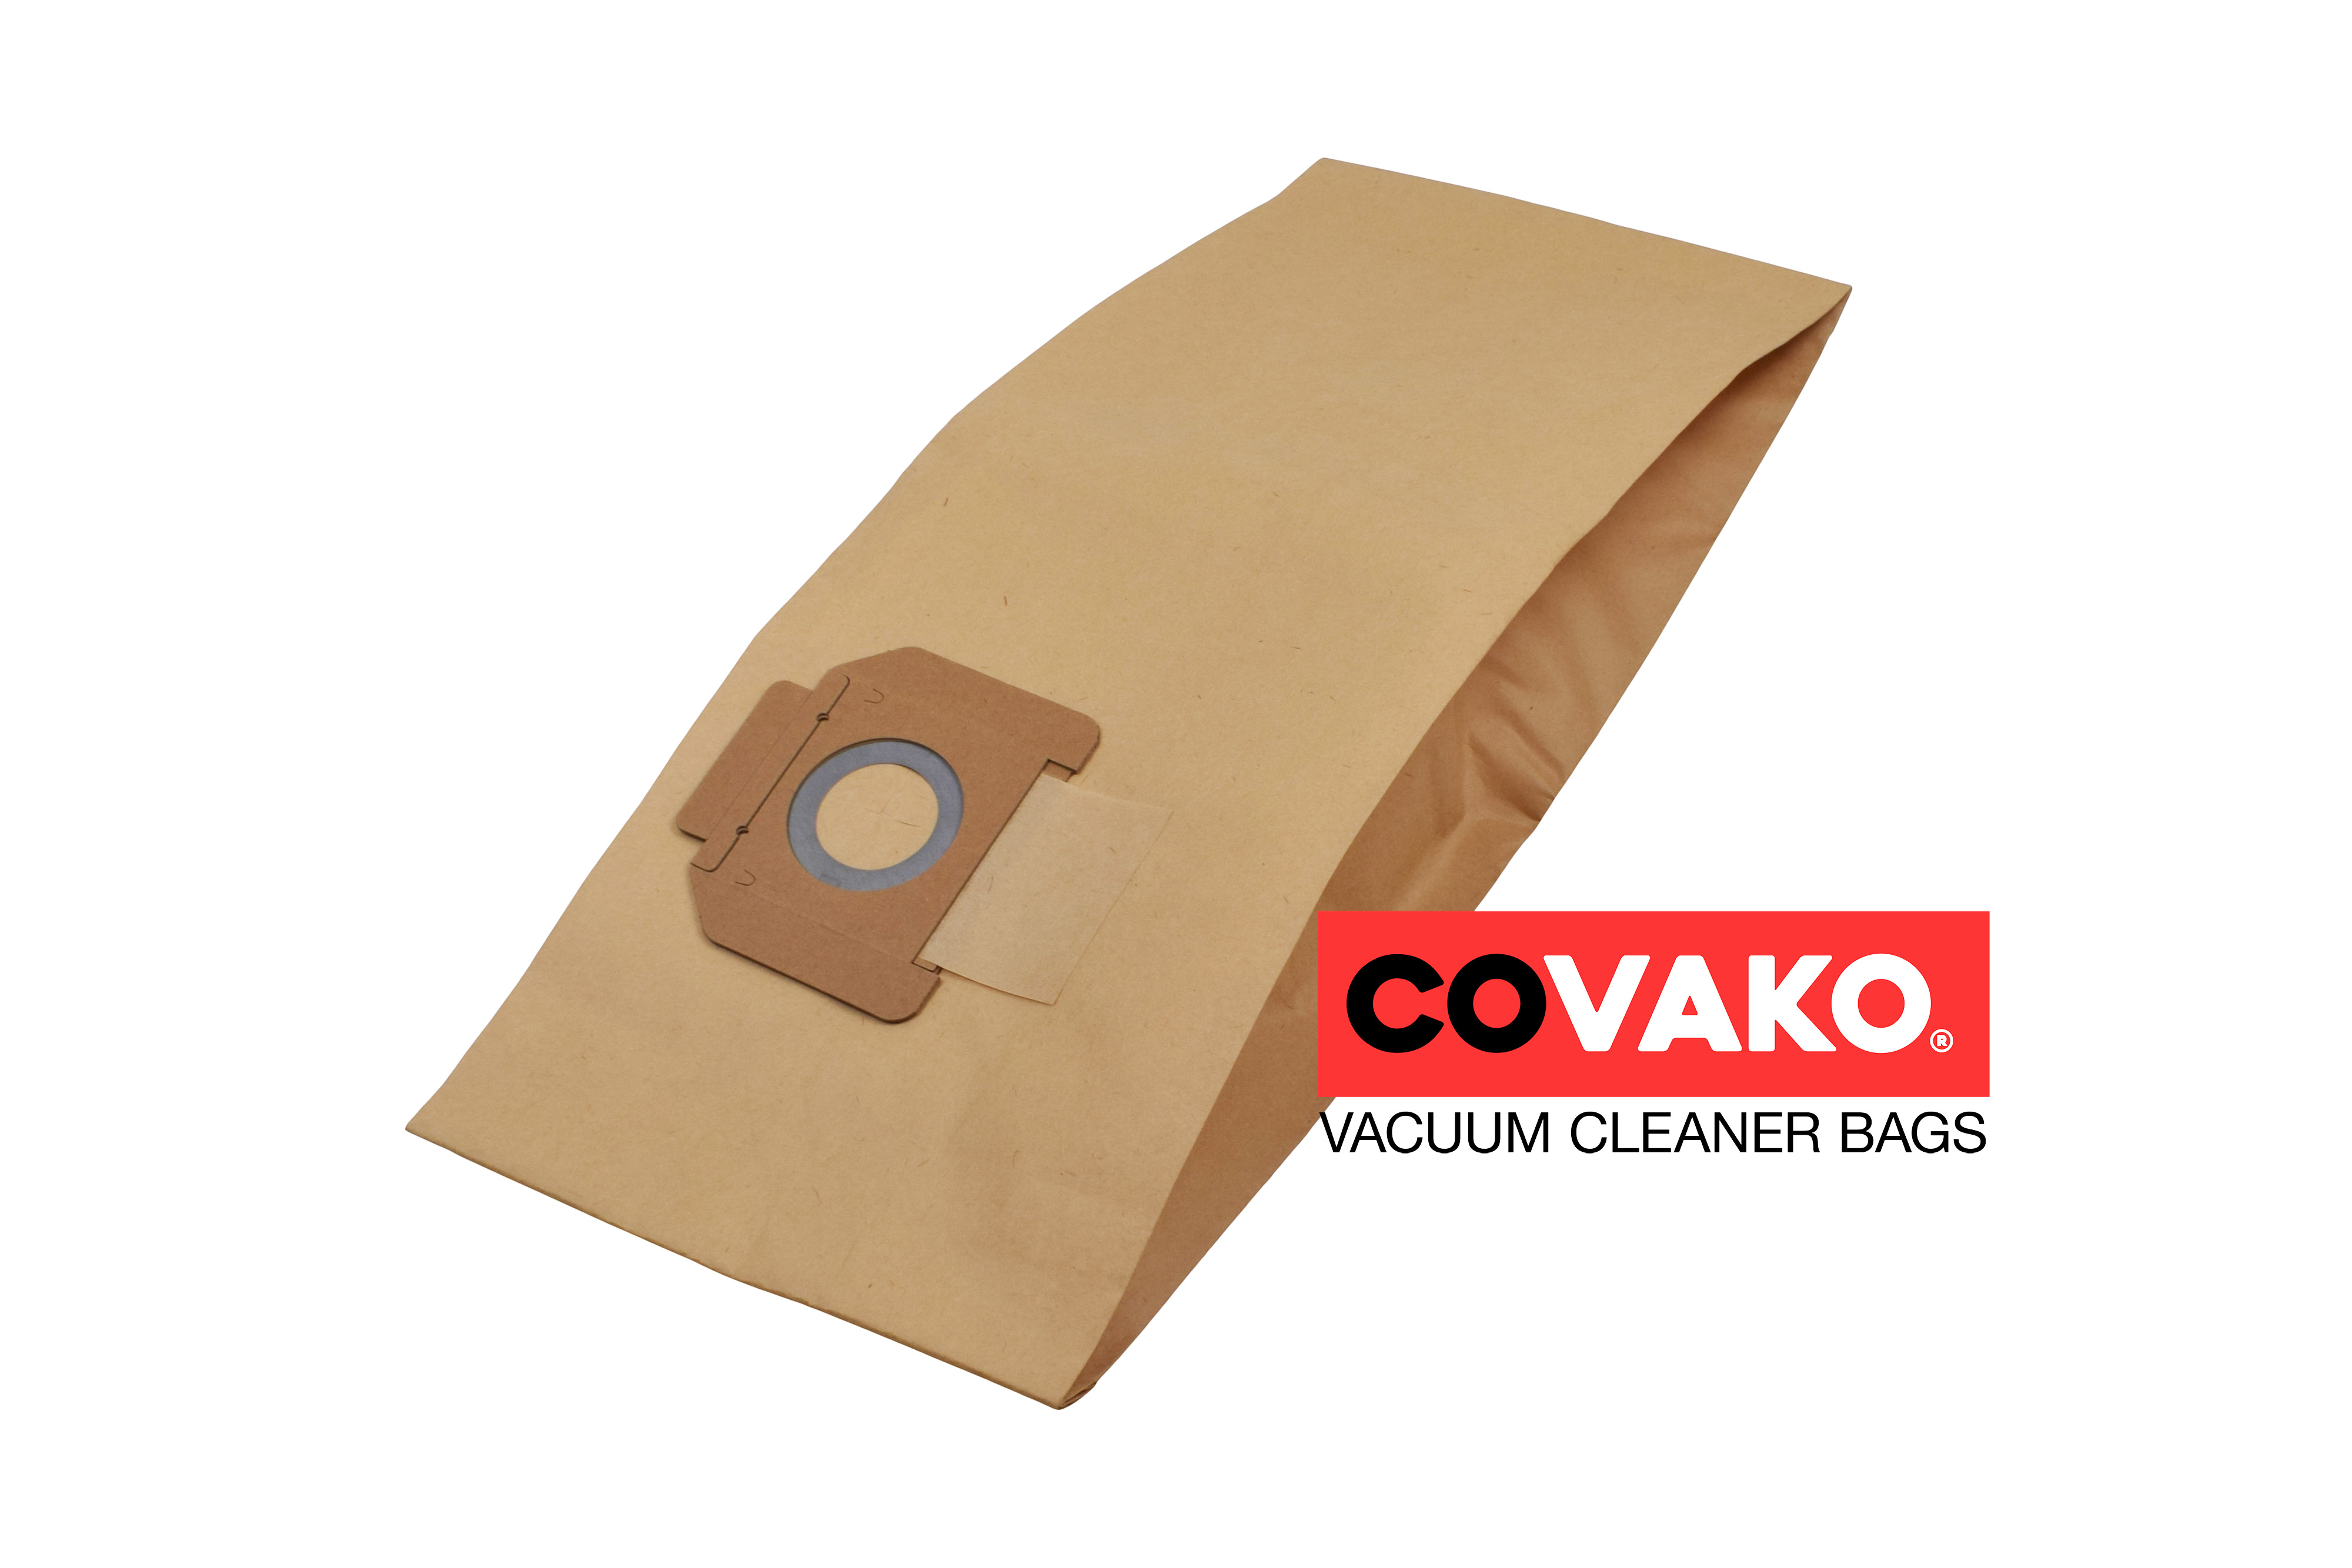 Alto IVB 3 / Papier - Alto sacs d’aspirateur